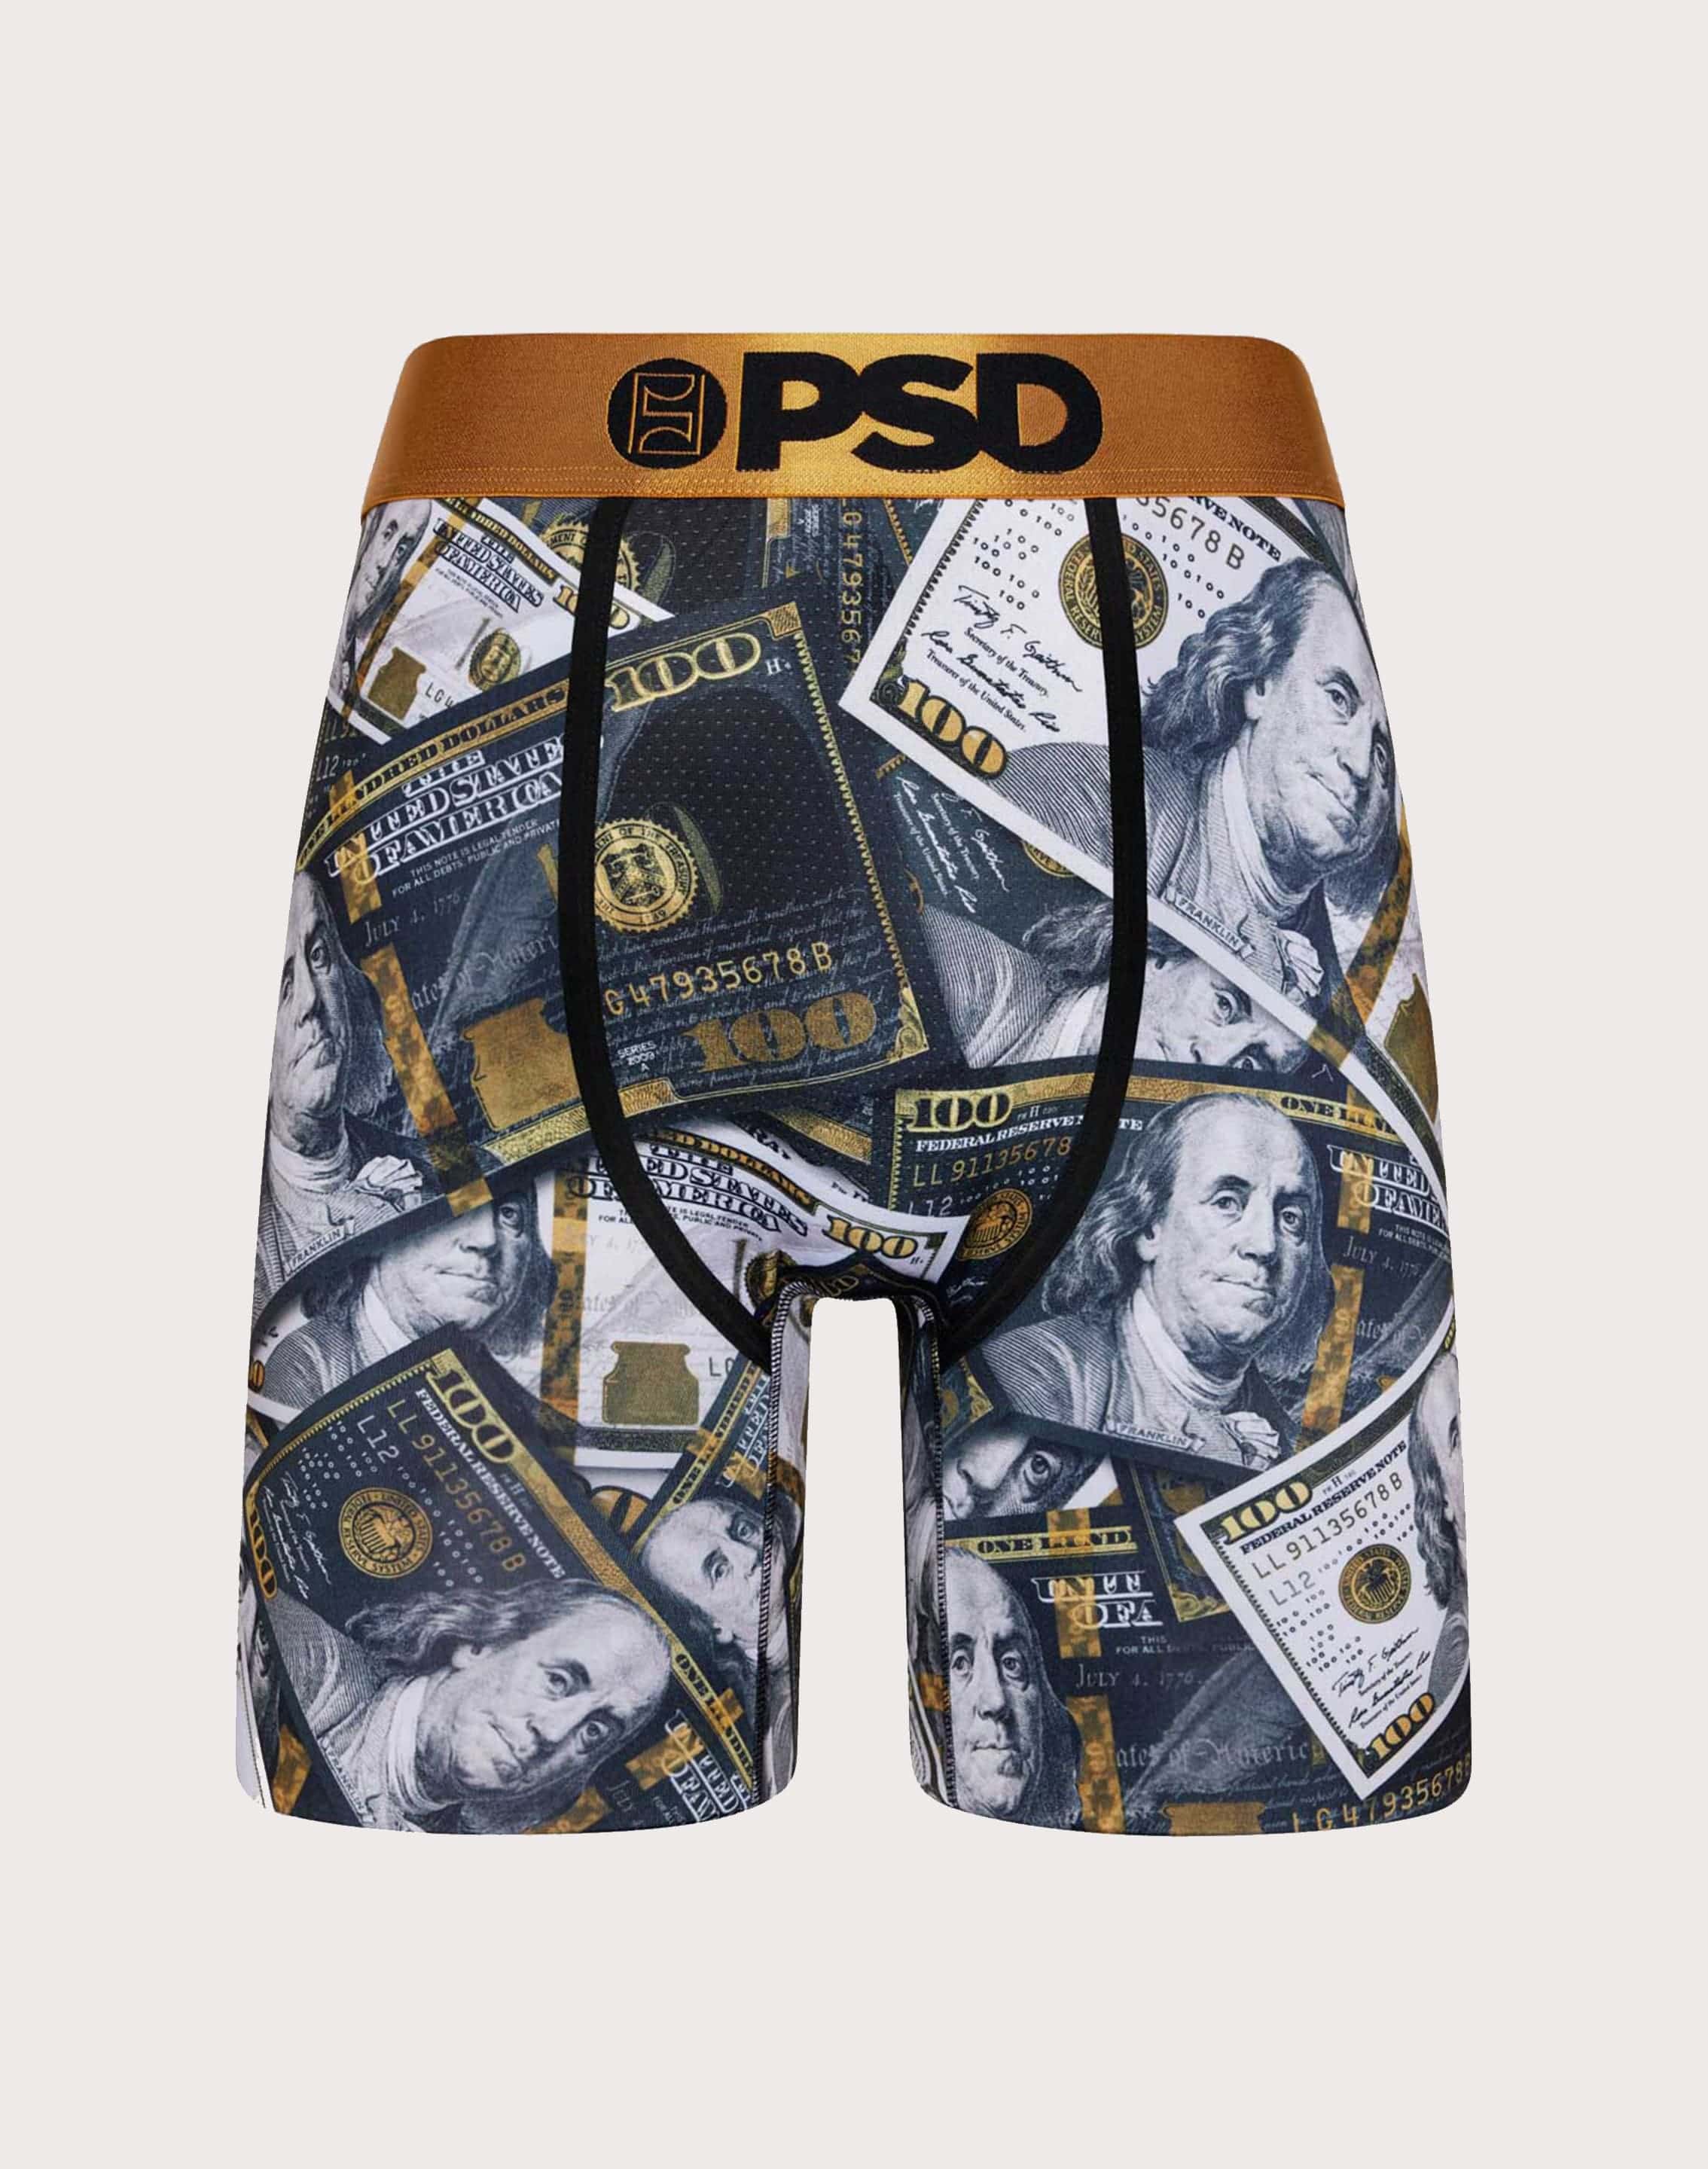 PSD Boxer Briefs 3 Pack - Depop